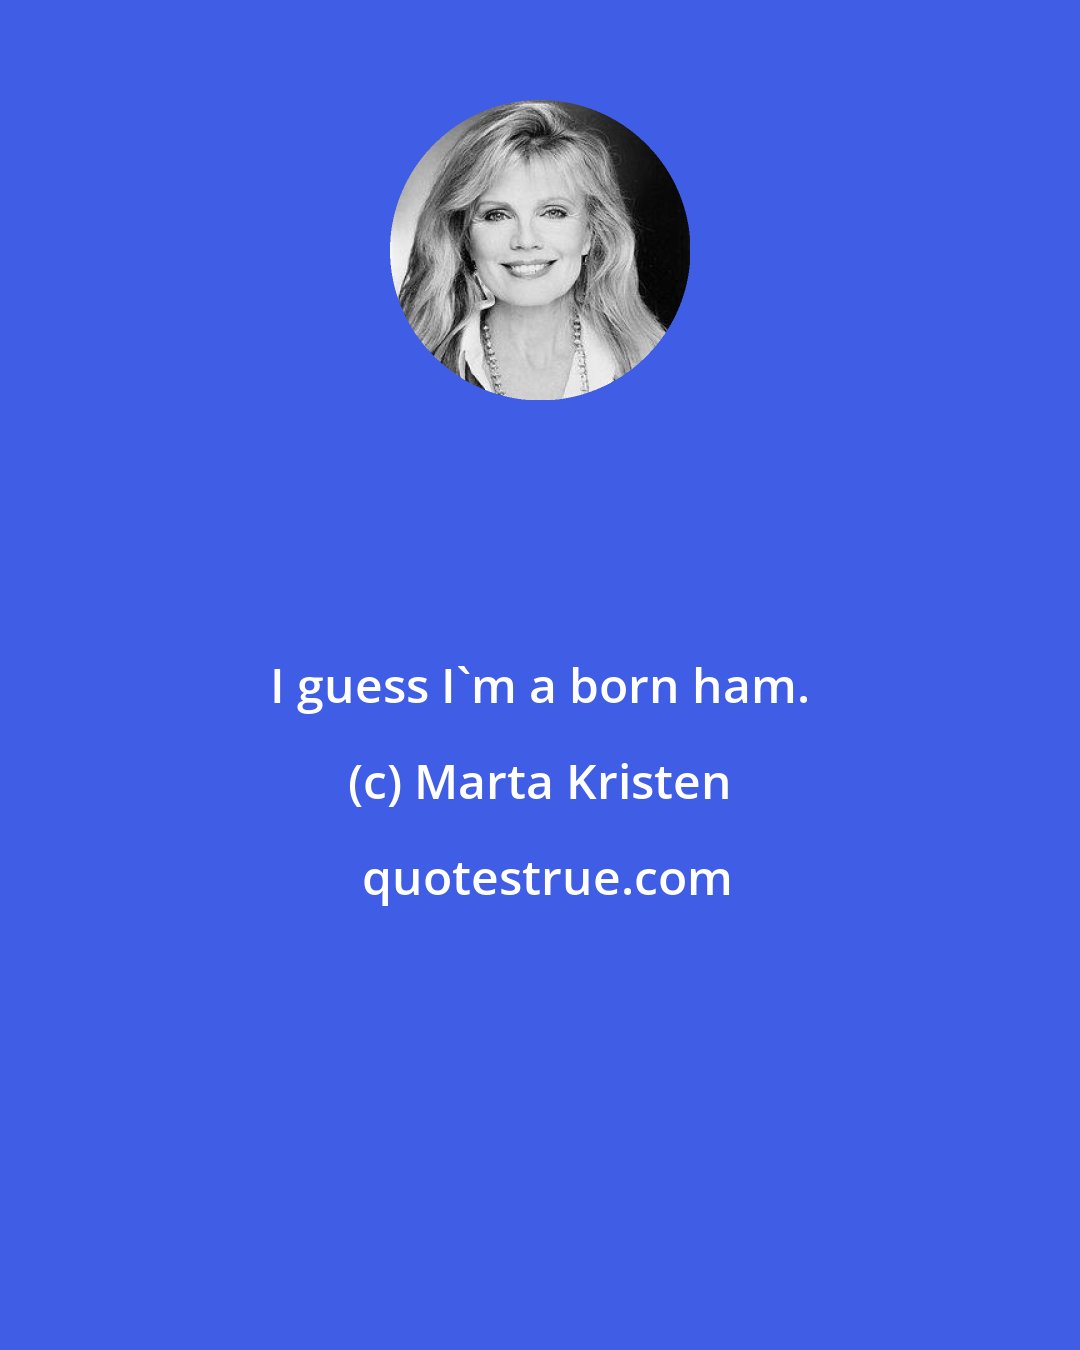 Marta Kristen: I guess I'm a born ham.